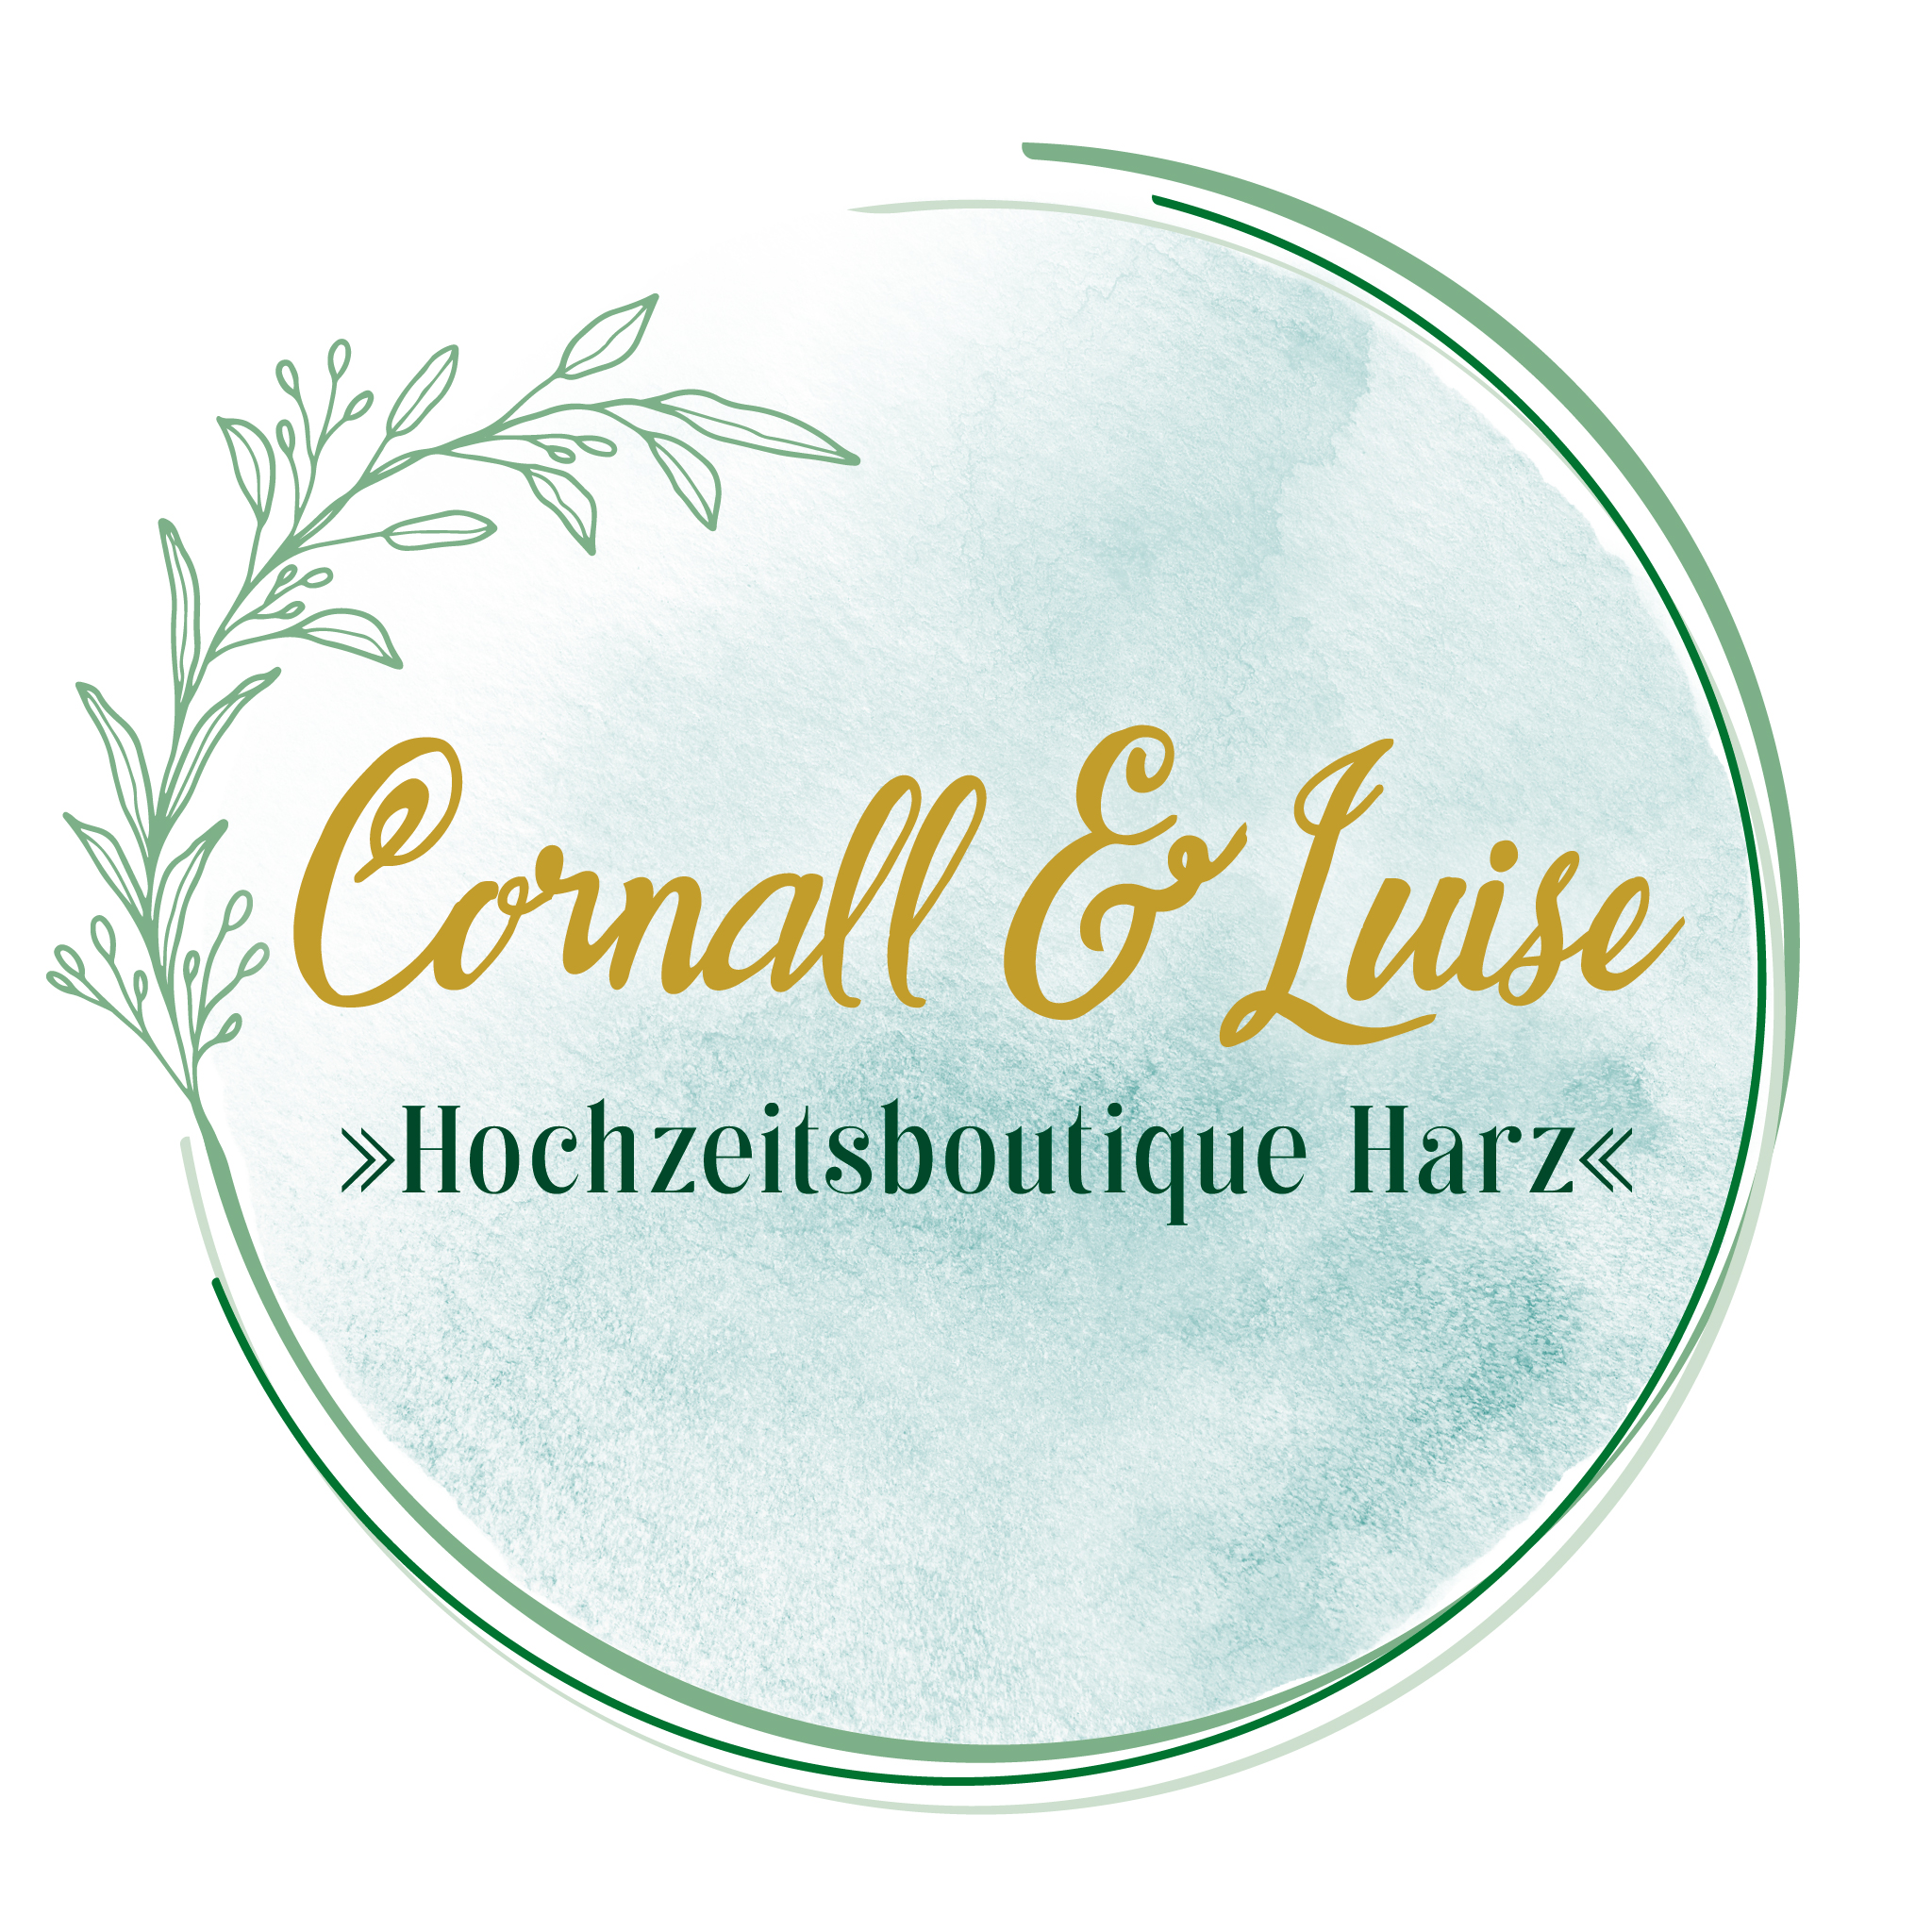 Hochzeit Sachsen-Anhalt - Details zu Cornall & Luise  Hochzeitsboutique Harz